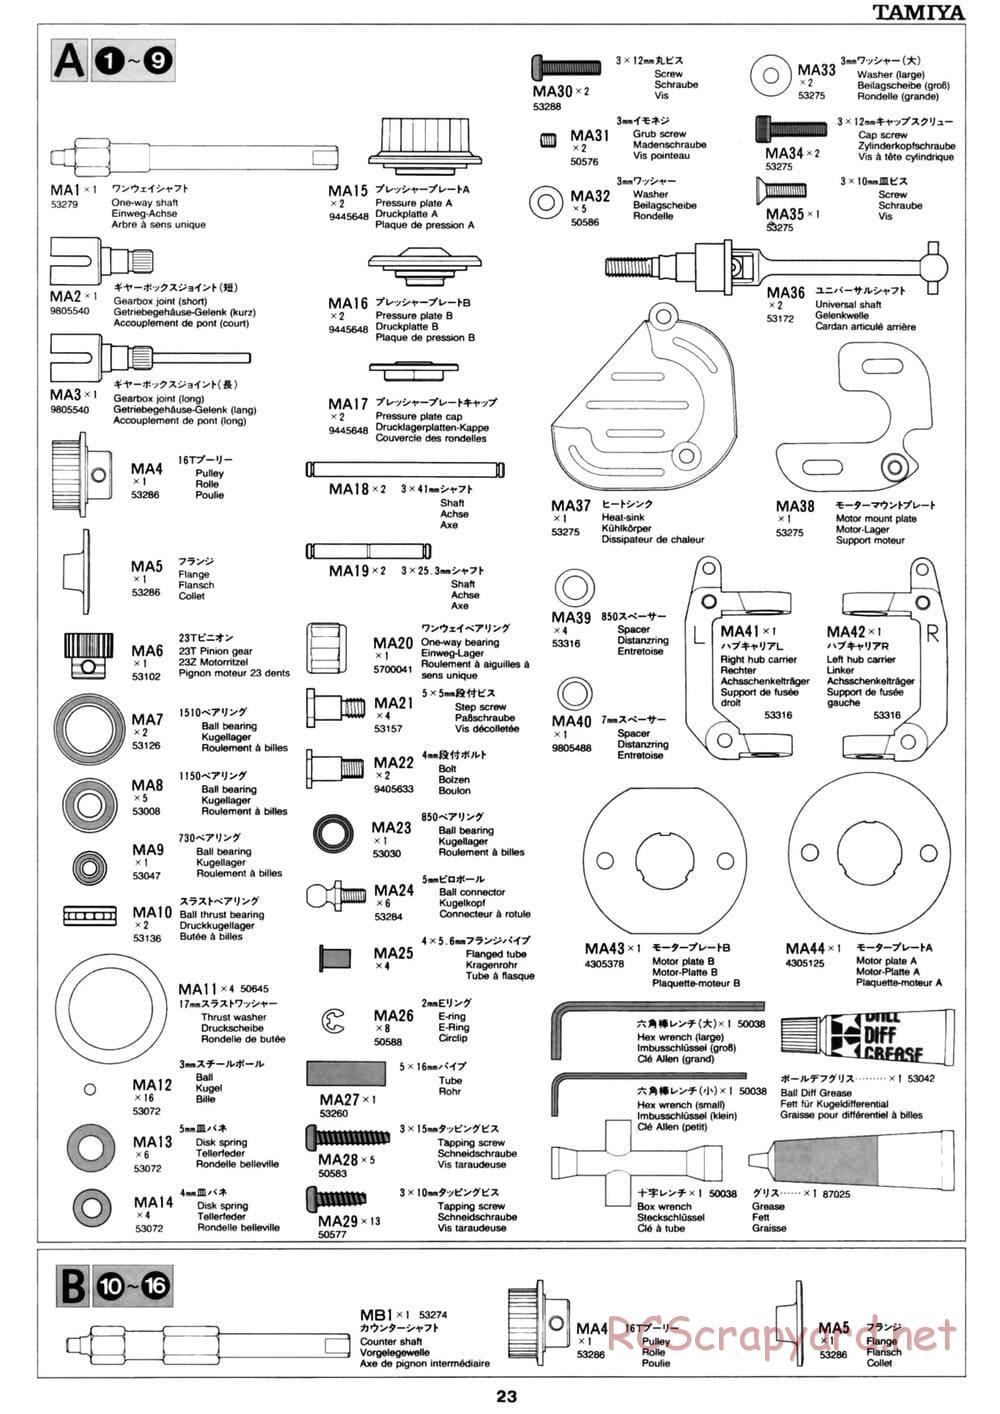 Tamiya - David Jun TA03F Pro Chassis - Manual - Page 23